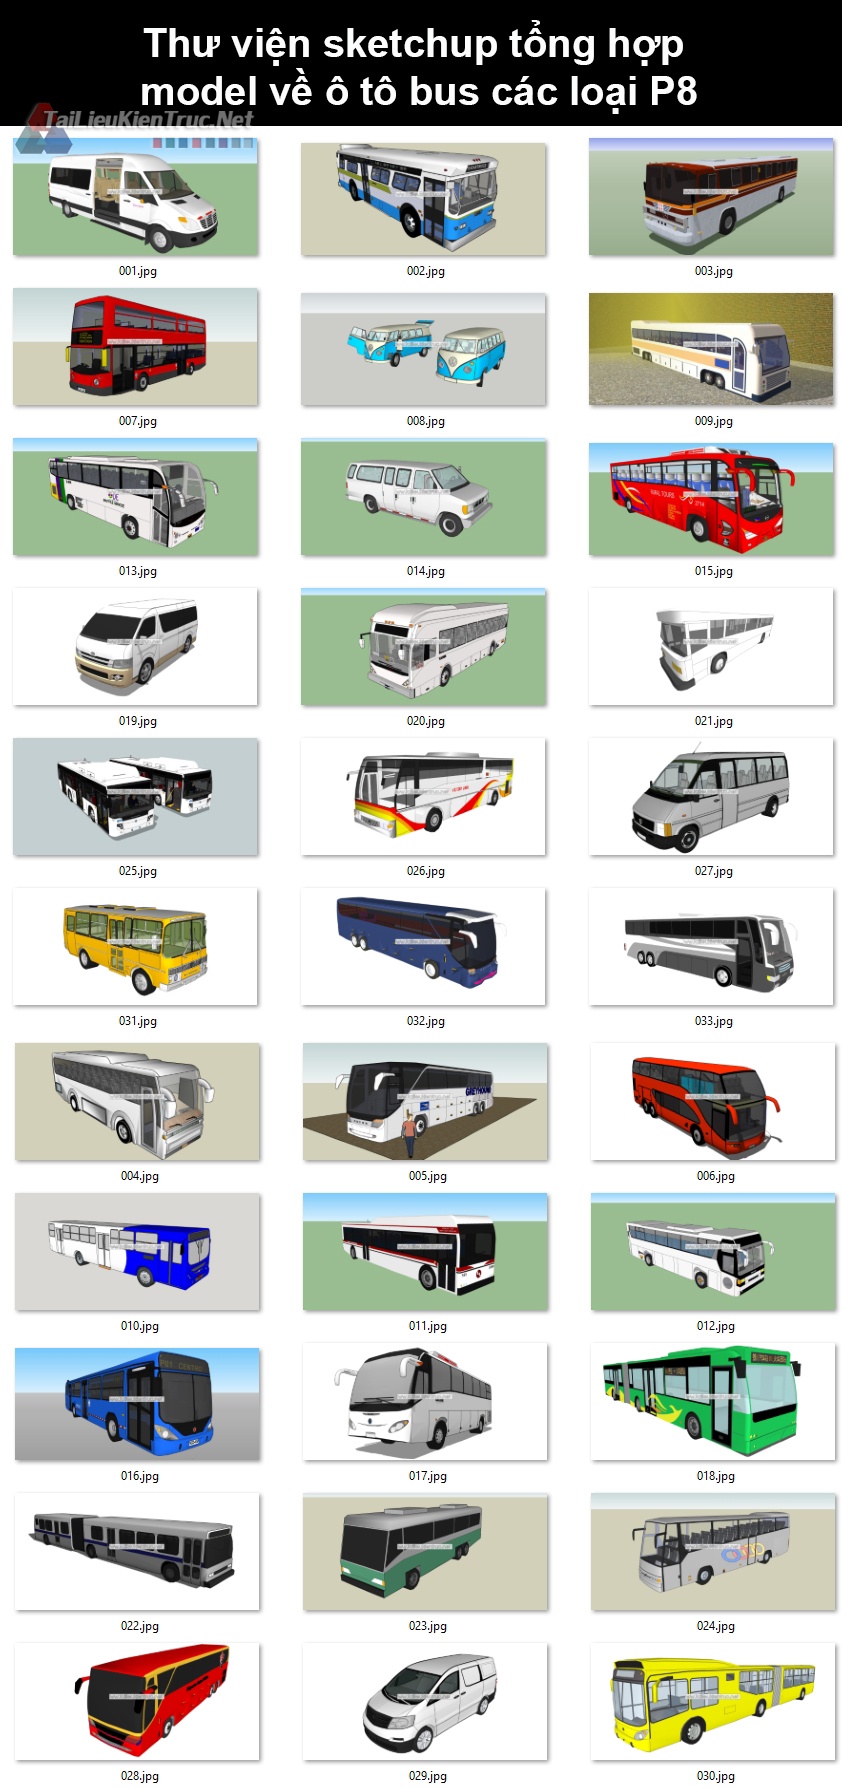 Thư viện sketchup tổng hợp model về ô tô bus các loại P8